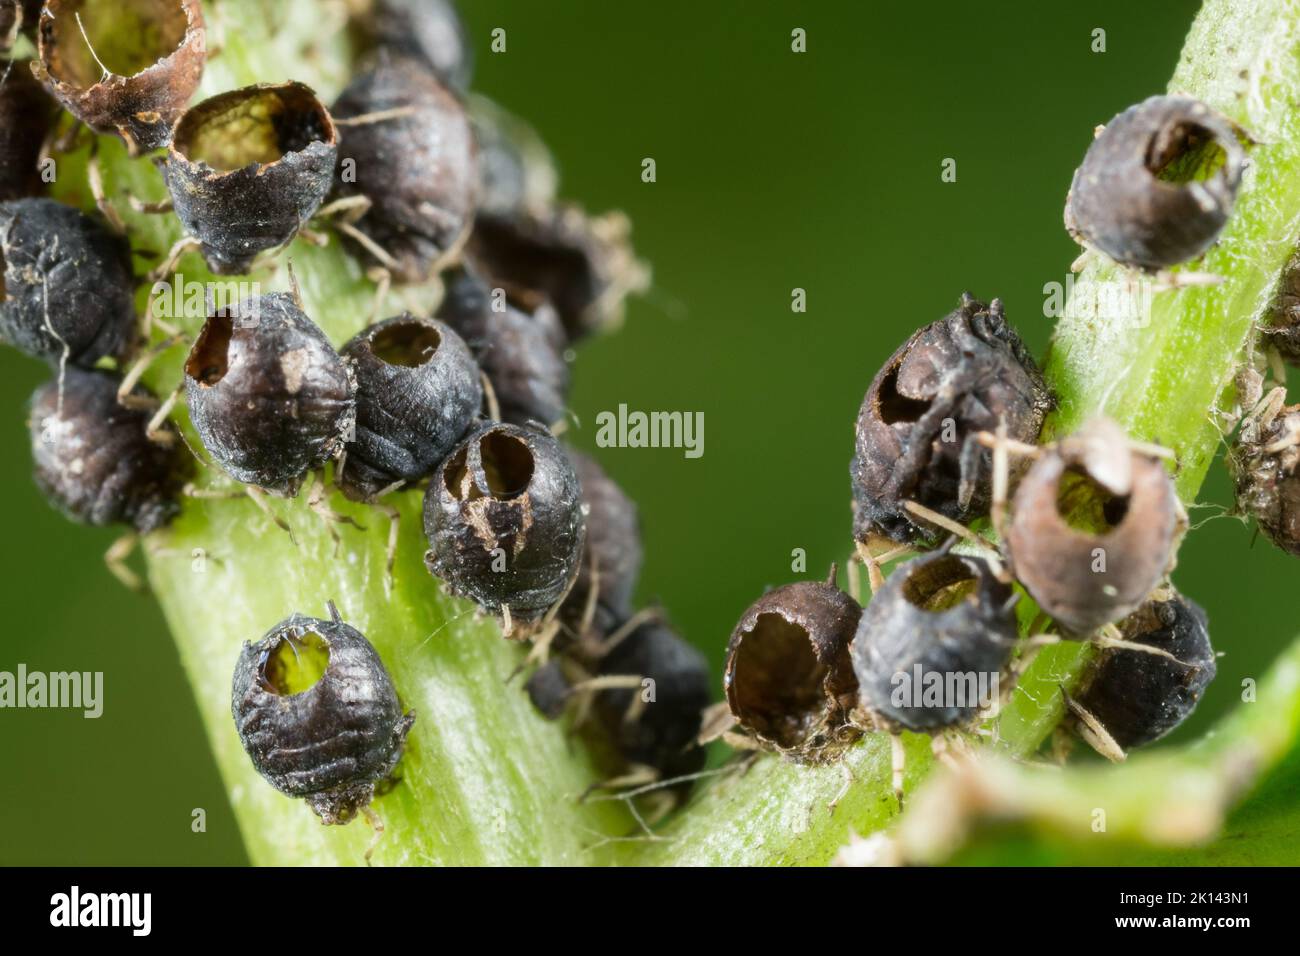 Apid parassitoide vittime di vespa Foto Stock